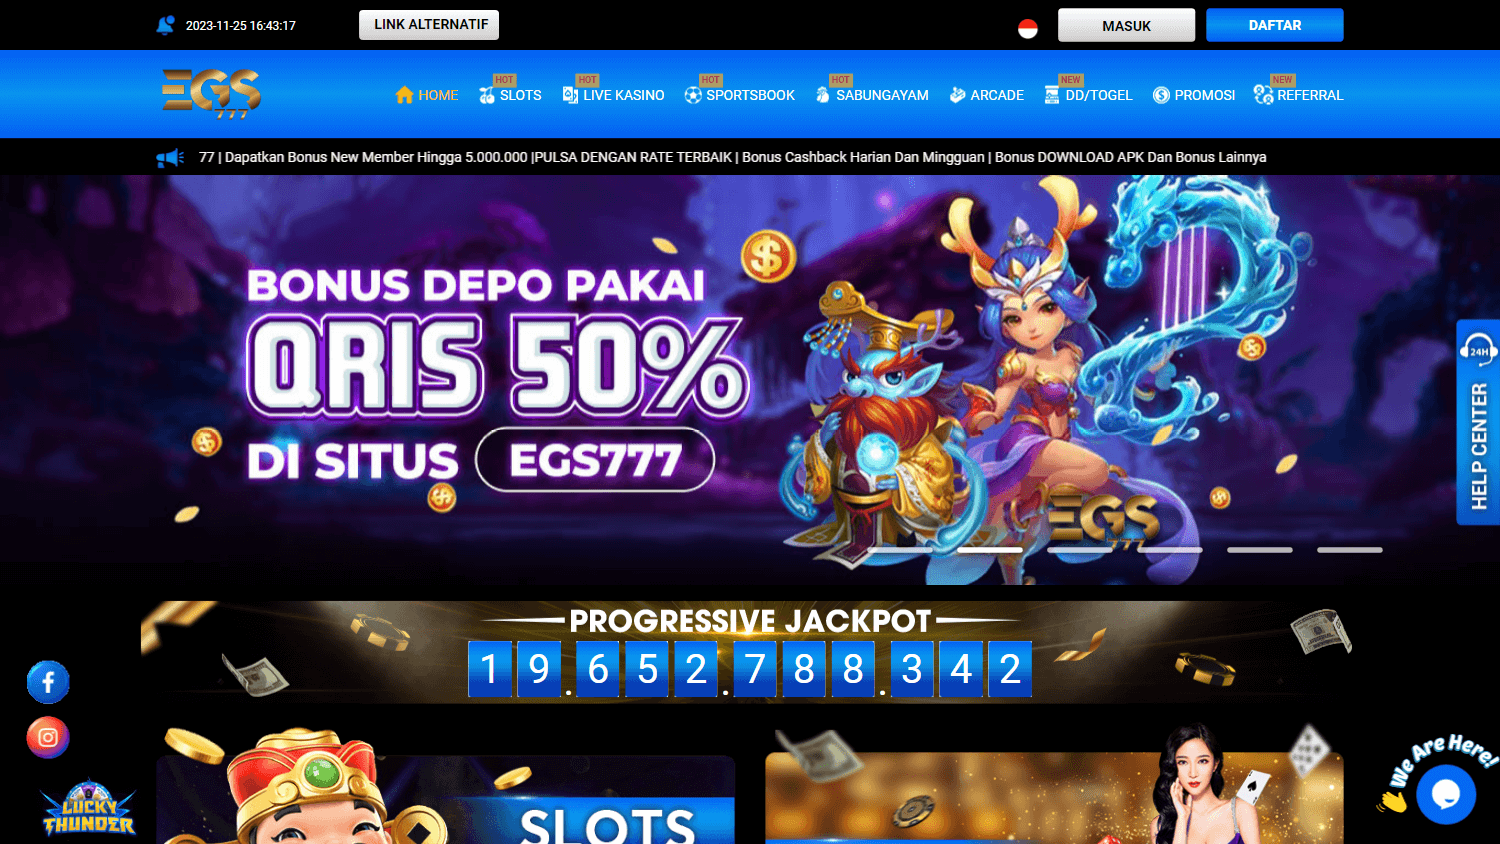 egs777_casino_homepage_desktop